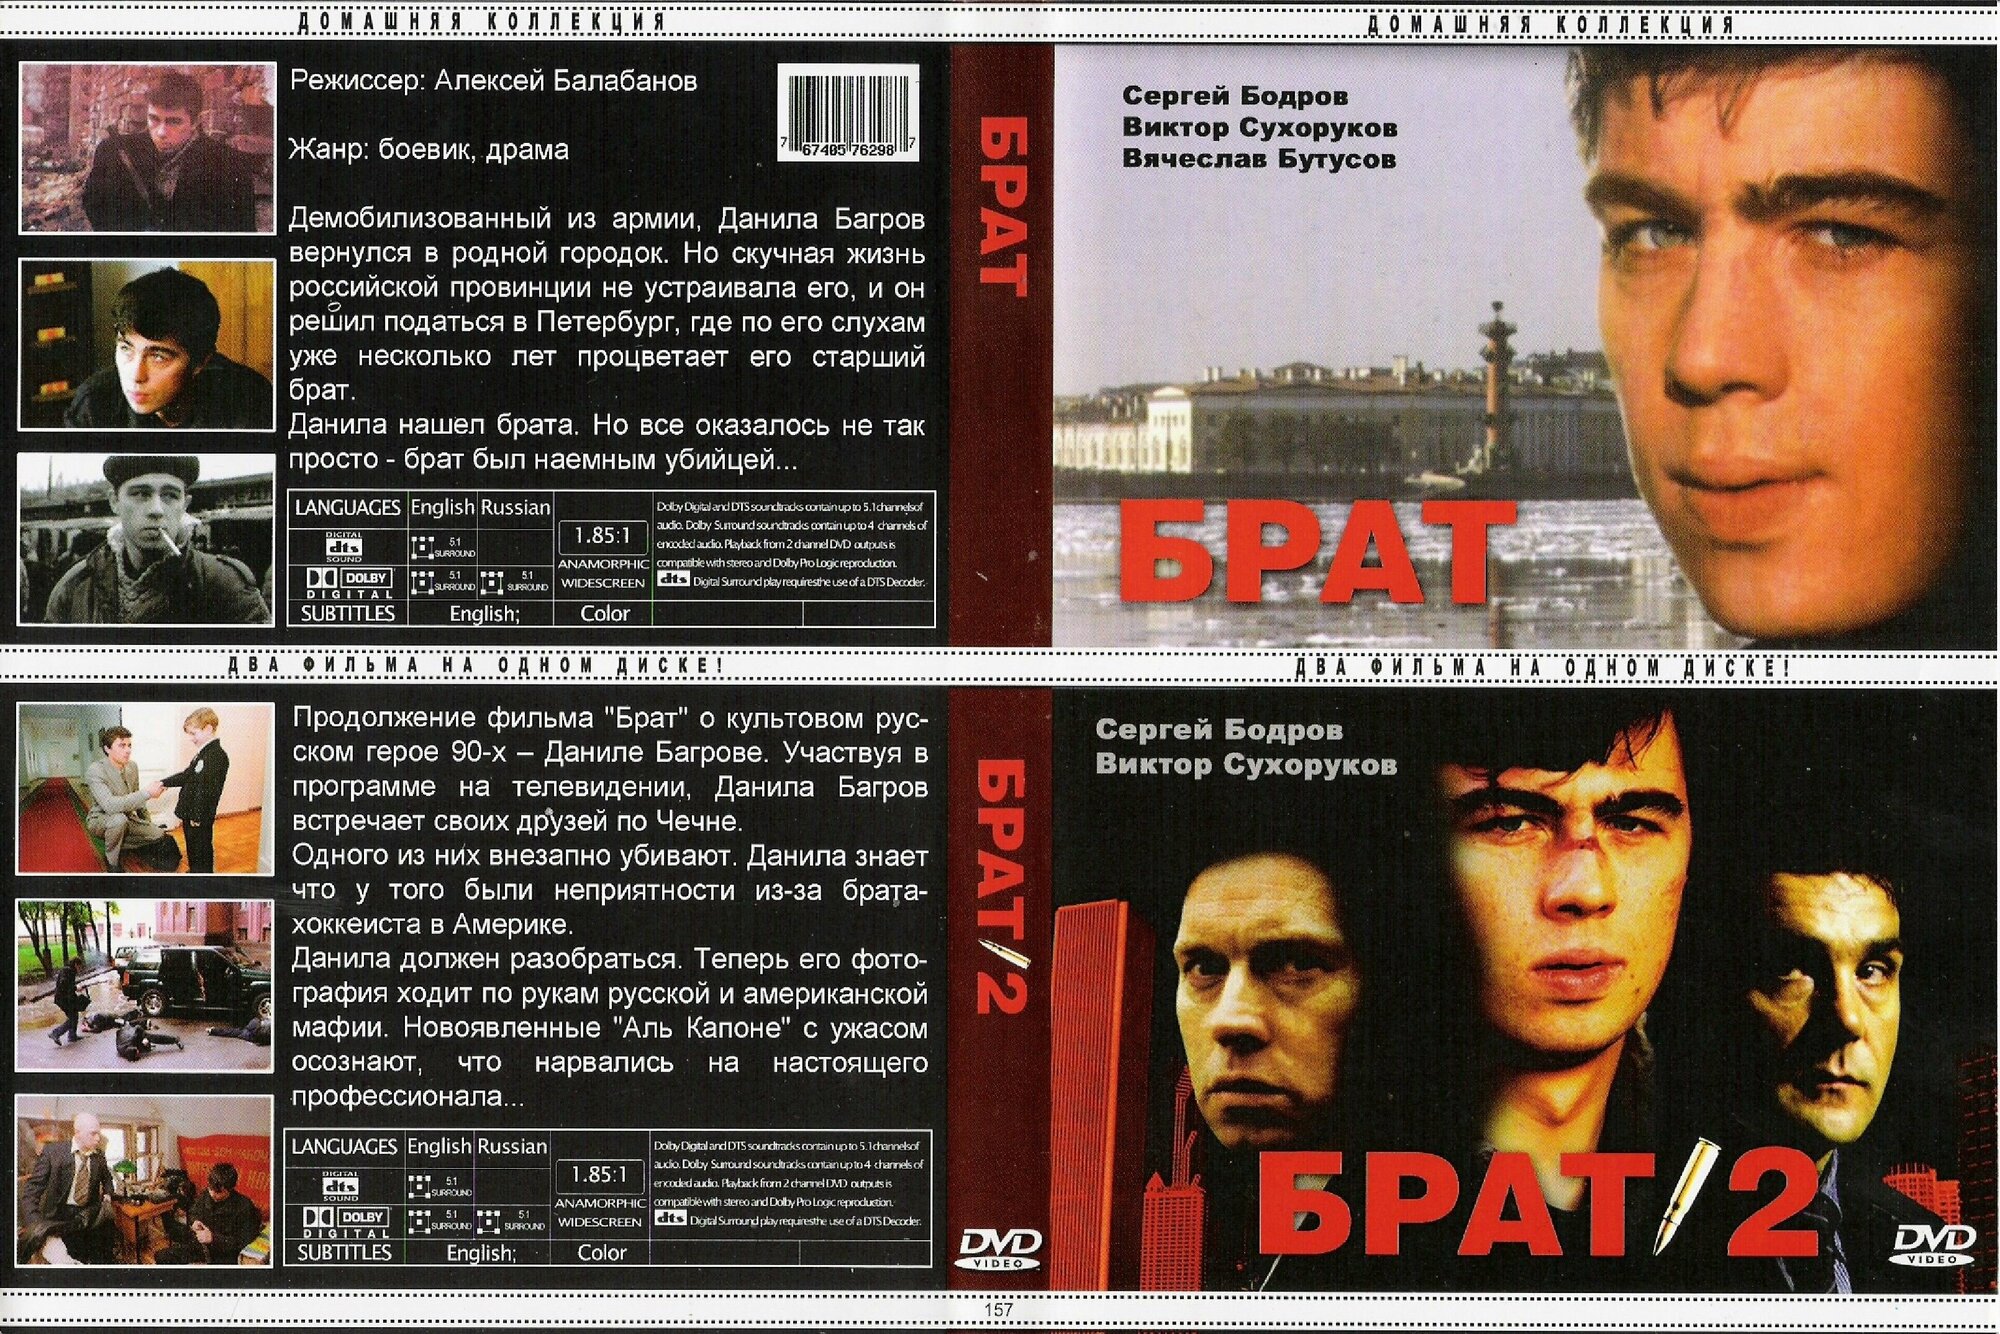 Фильм "Брат 2 в 1" 1997г.-2000г. DVD